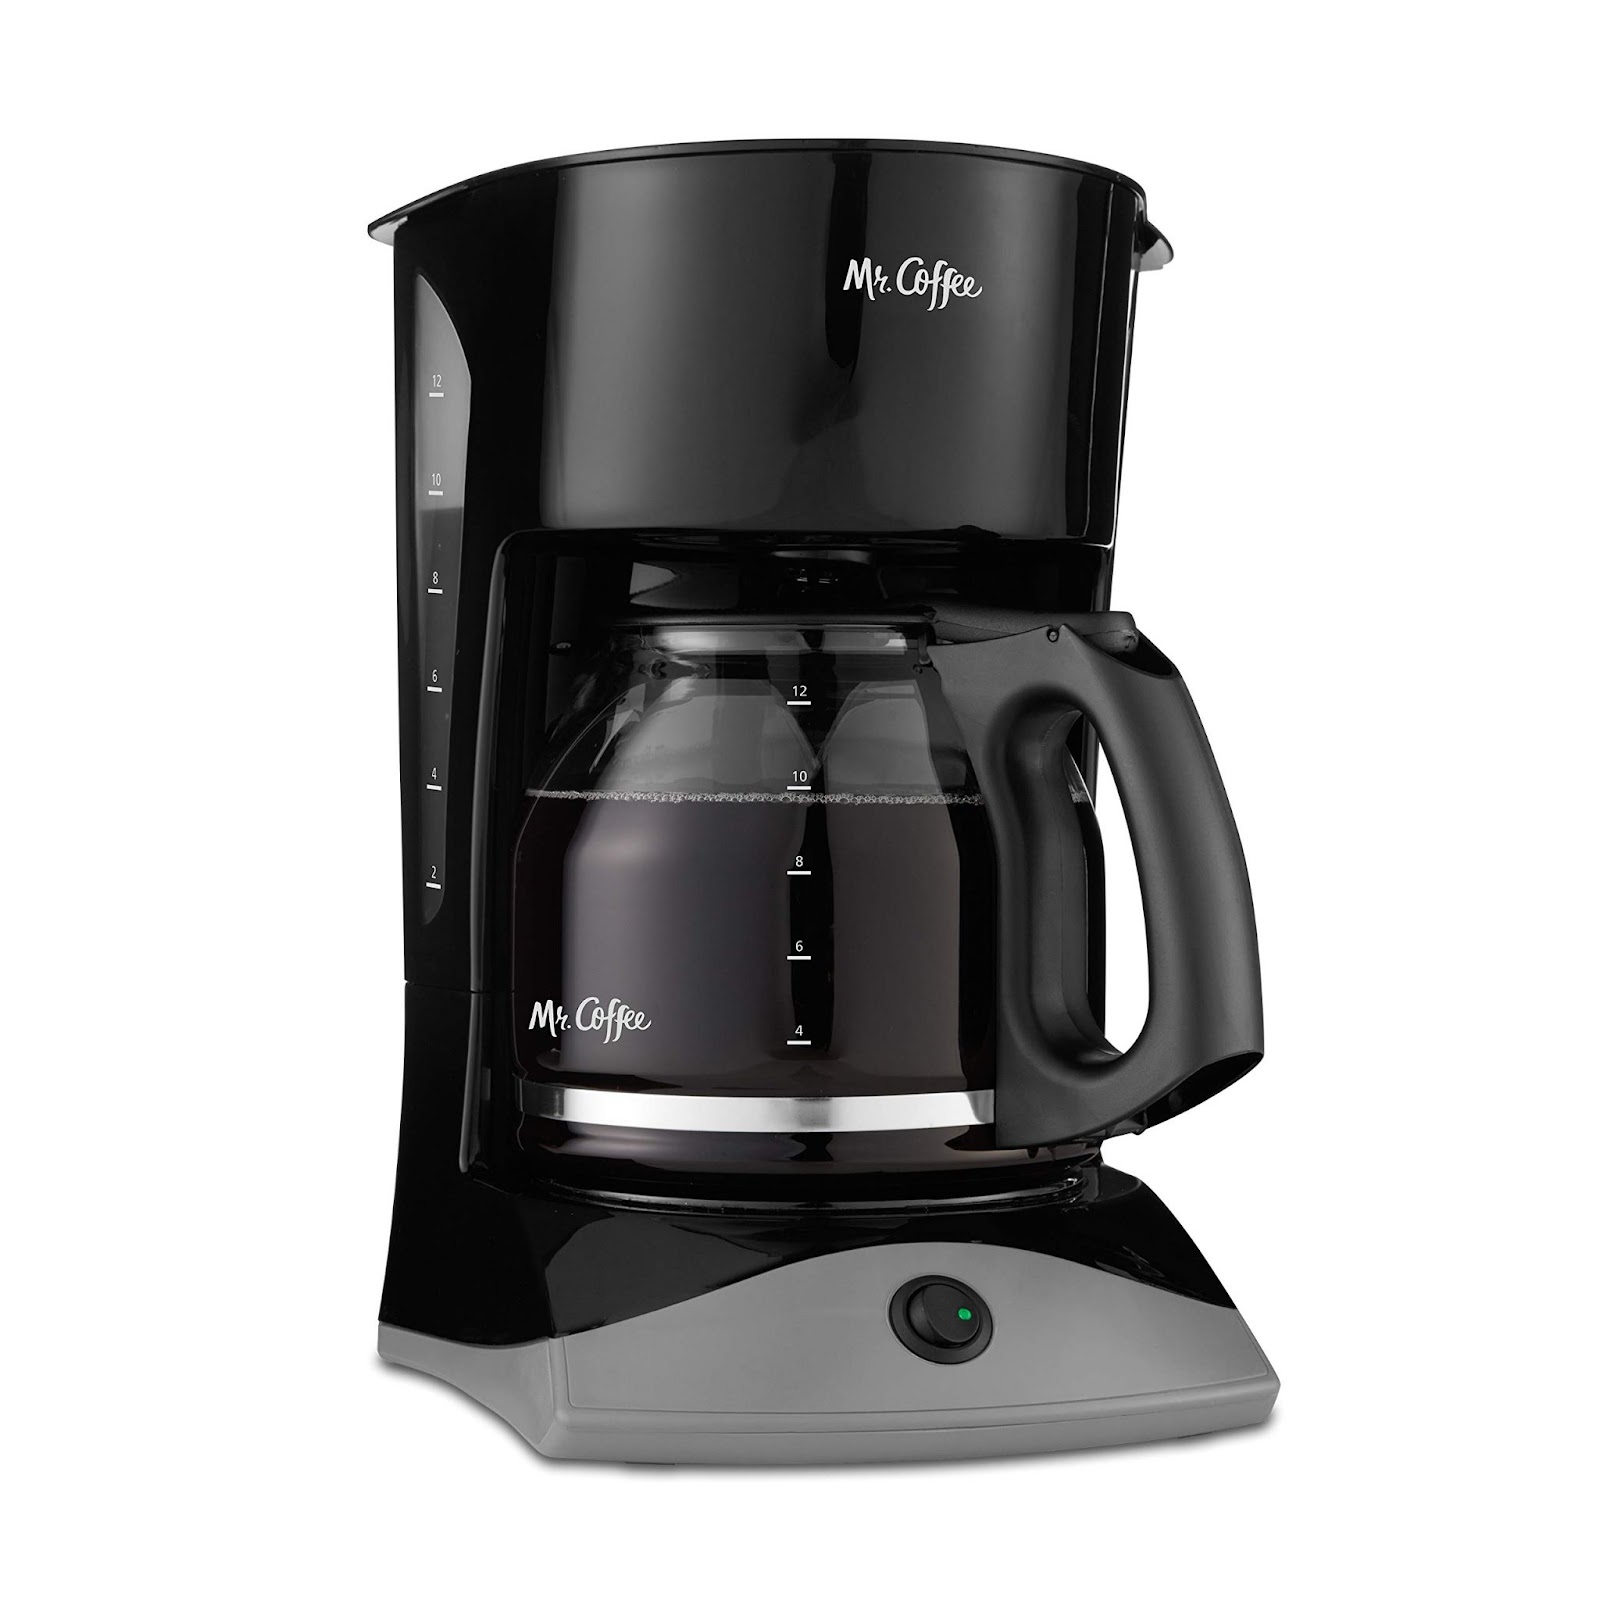 เครื่องชงกาแฟ Mr. Coffee 12-Cup Drip Coffee Maker